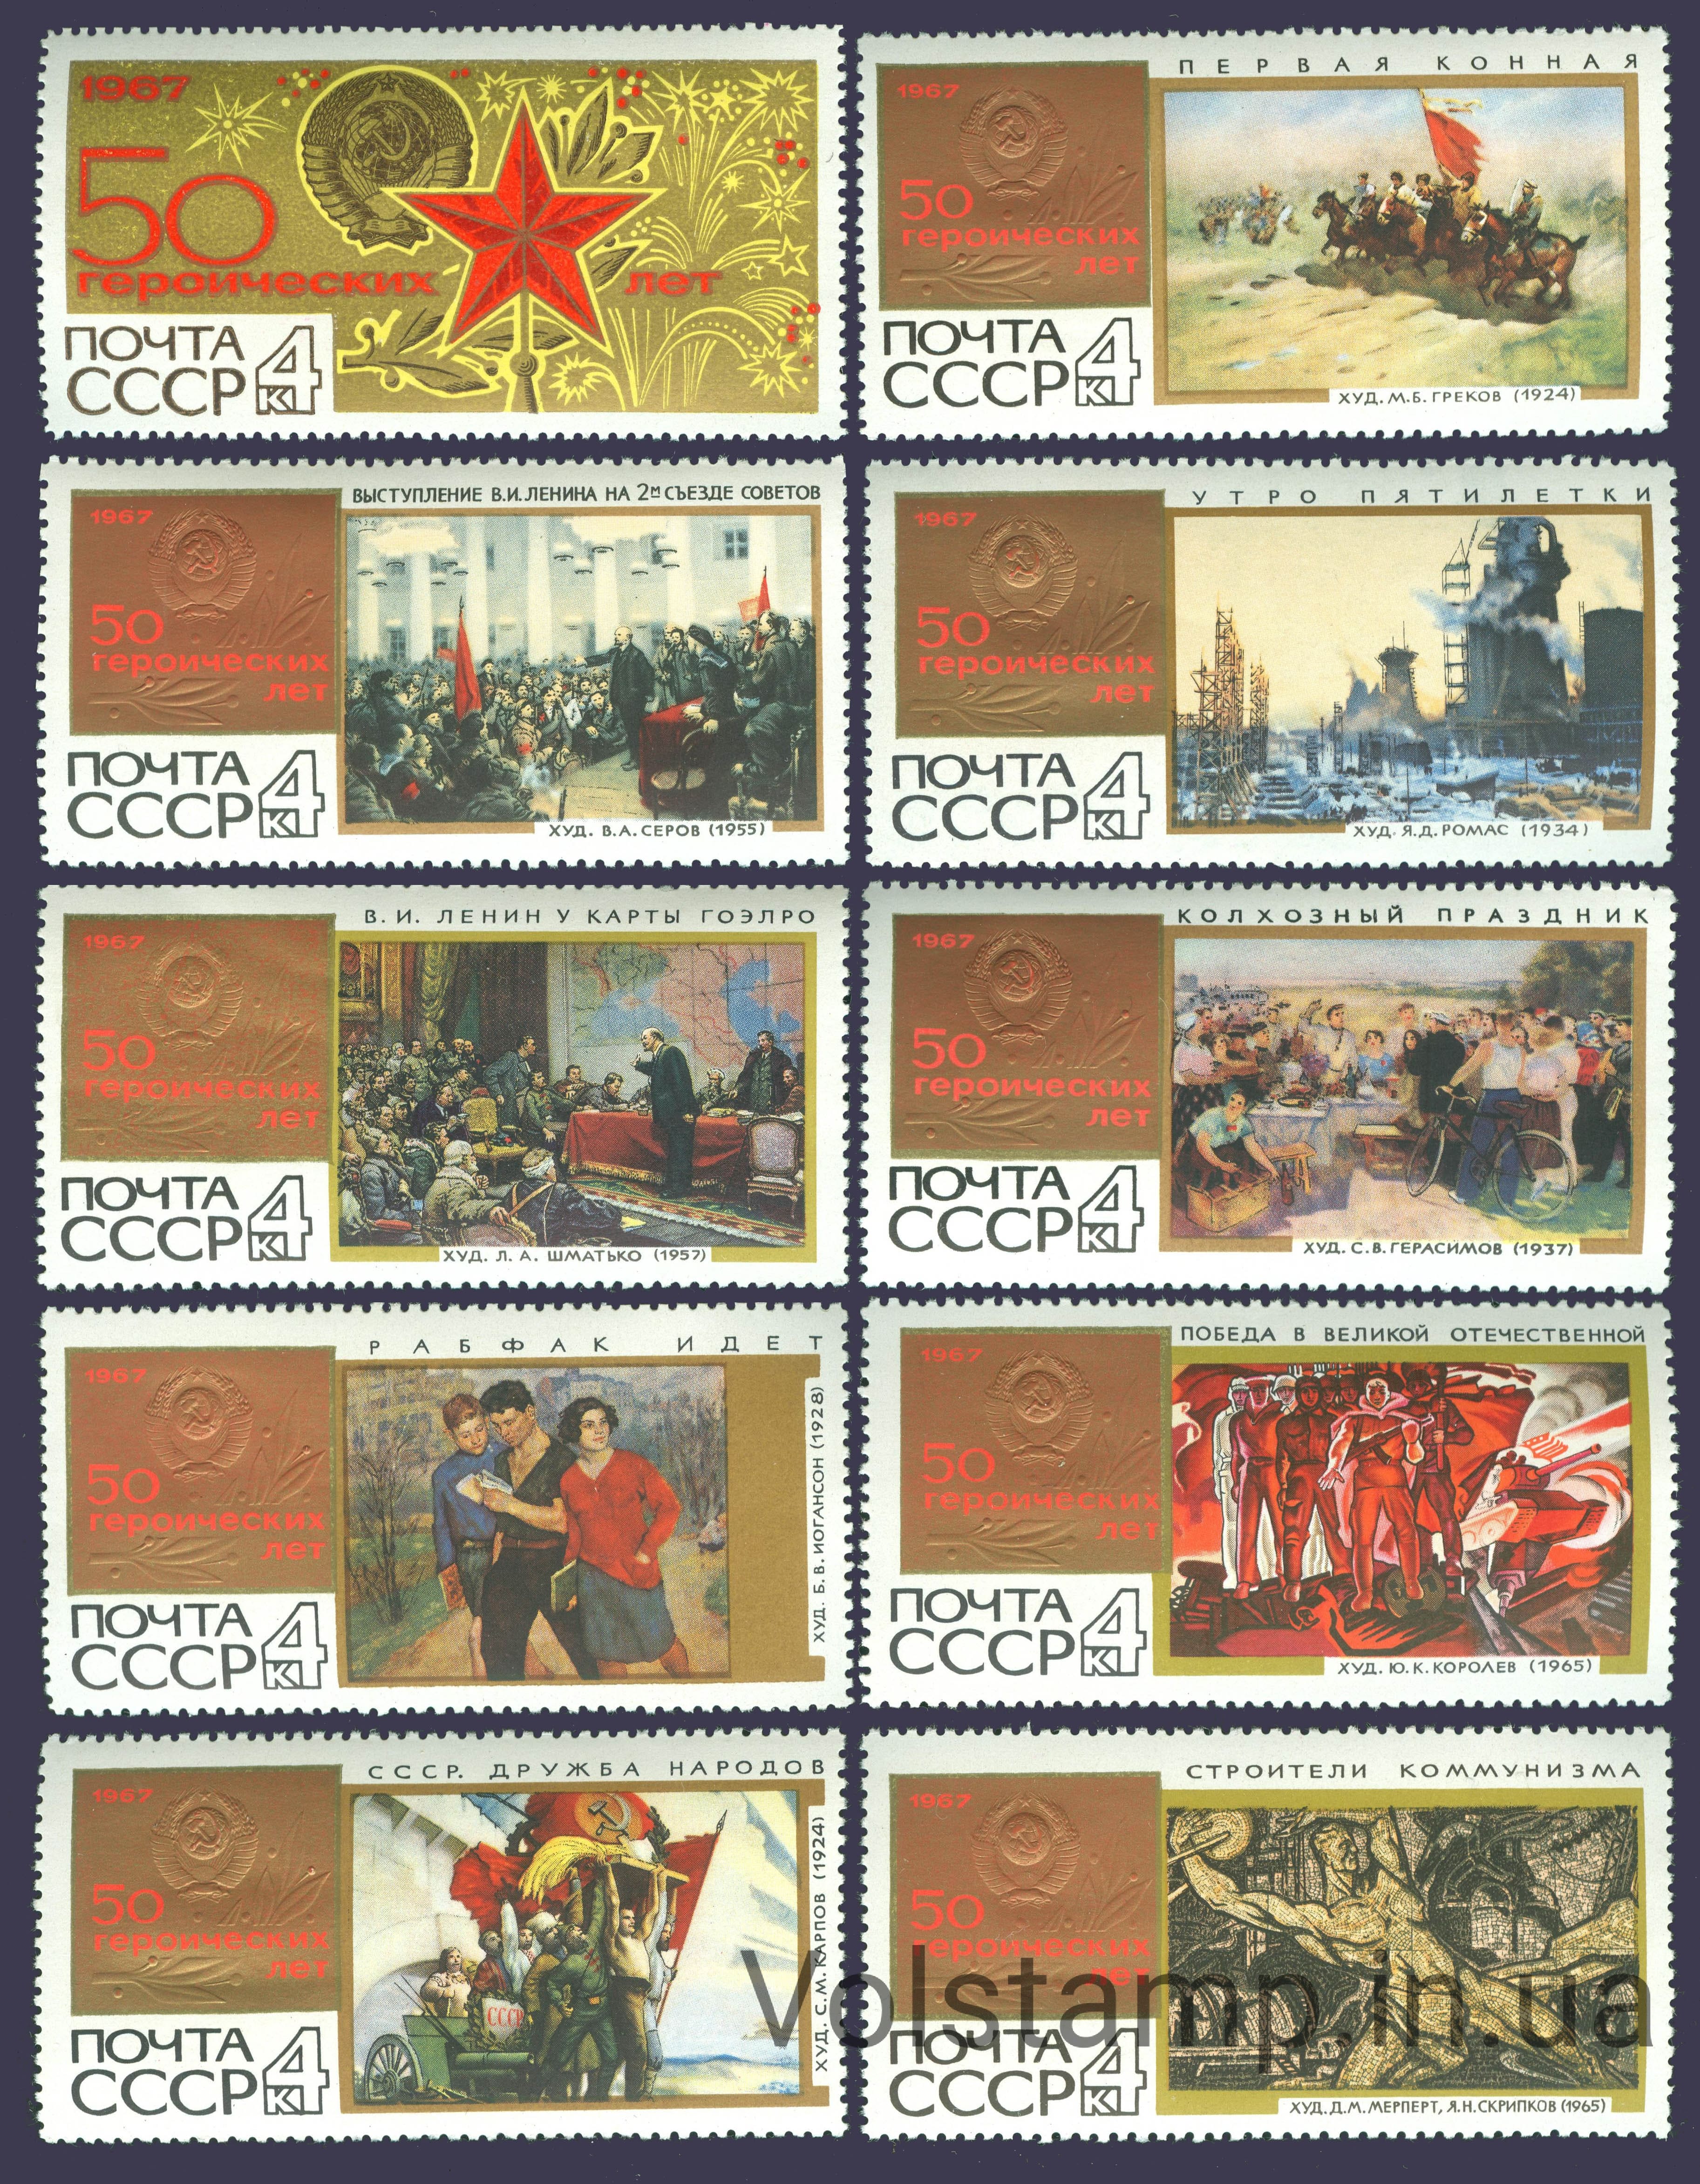 1967 серия марок 50 героических лет №3458-3467